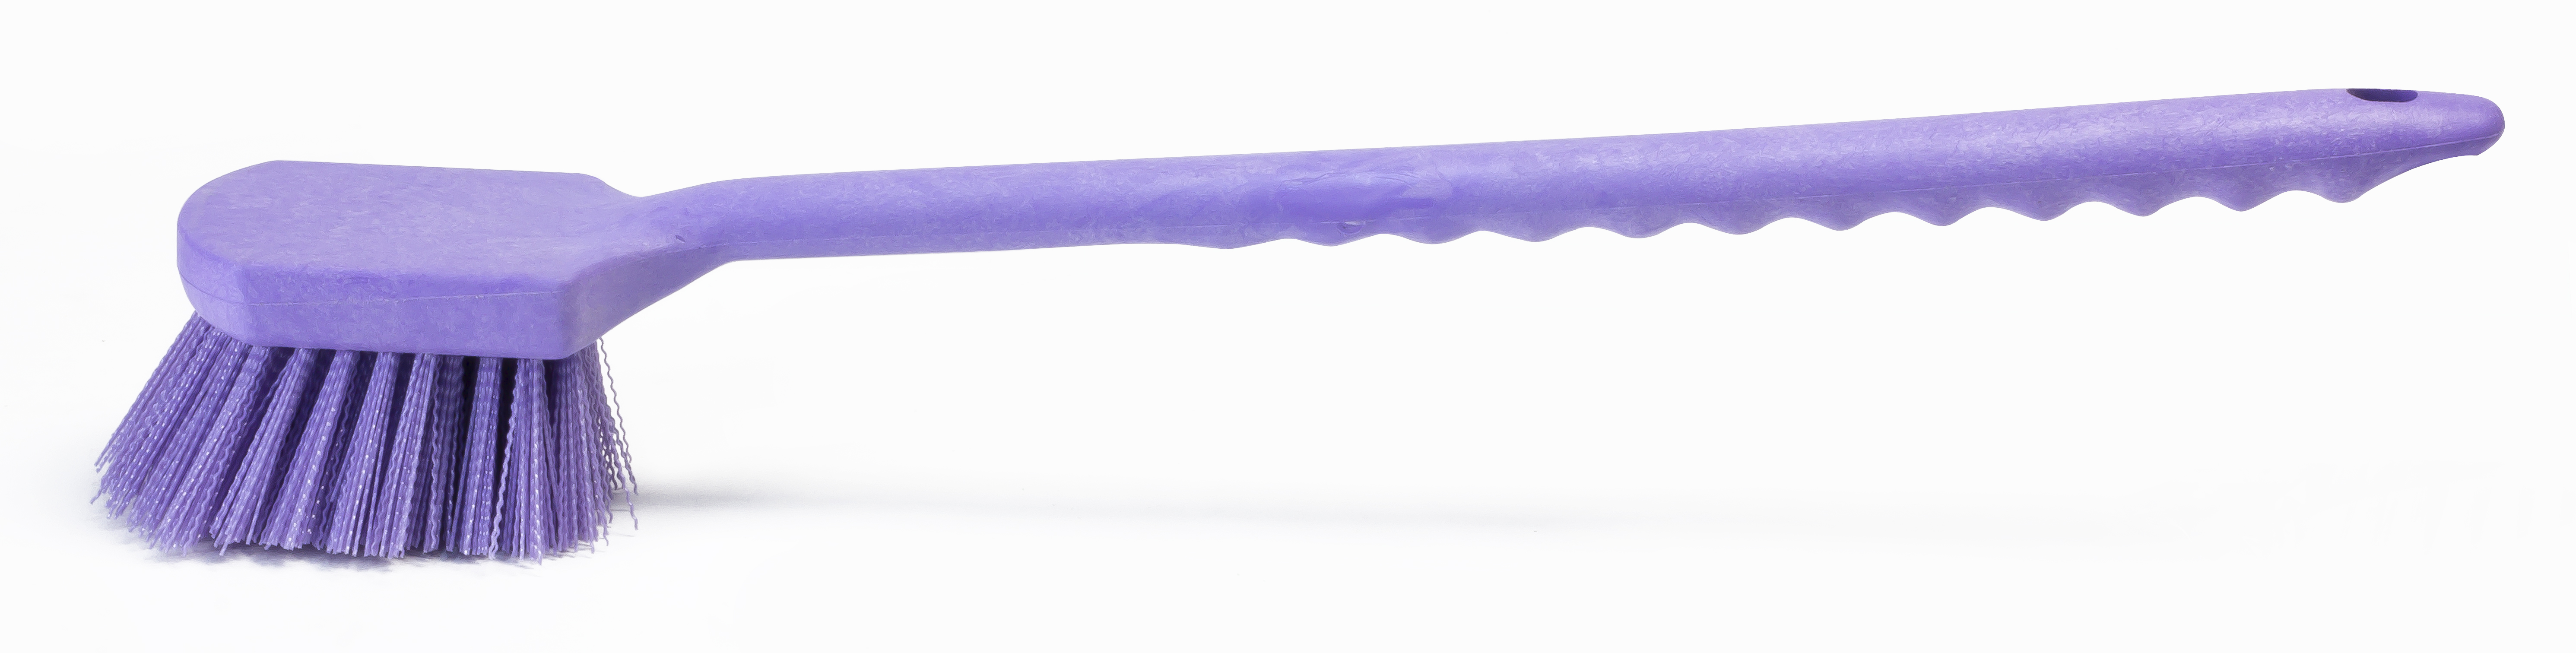 Щетка HACCPER с длинной ручкой, для мытья и оттирки, жесткая, 500 мм, фиолетовая